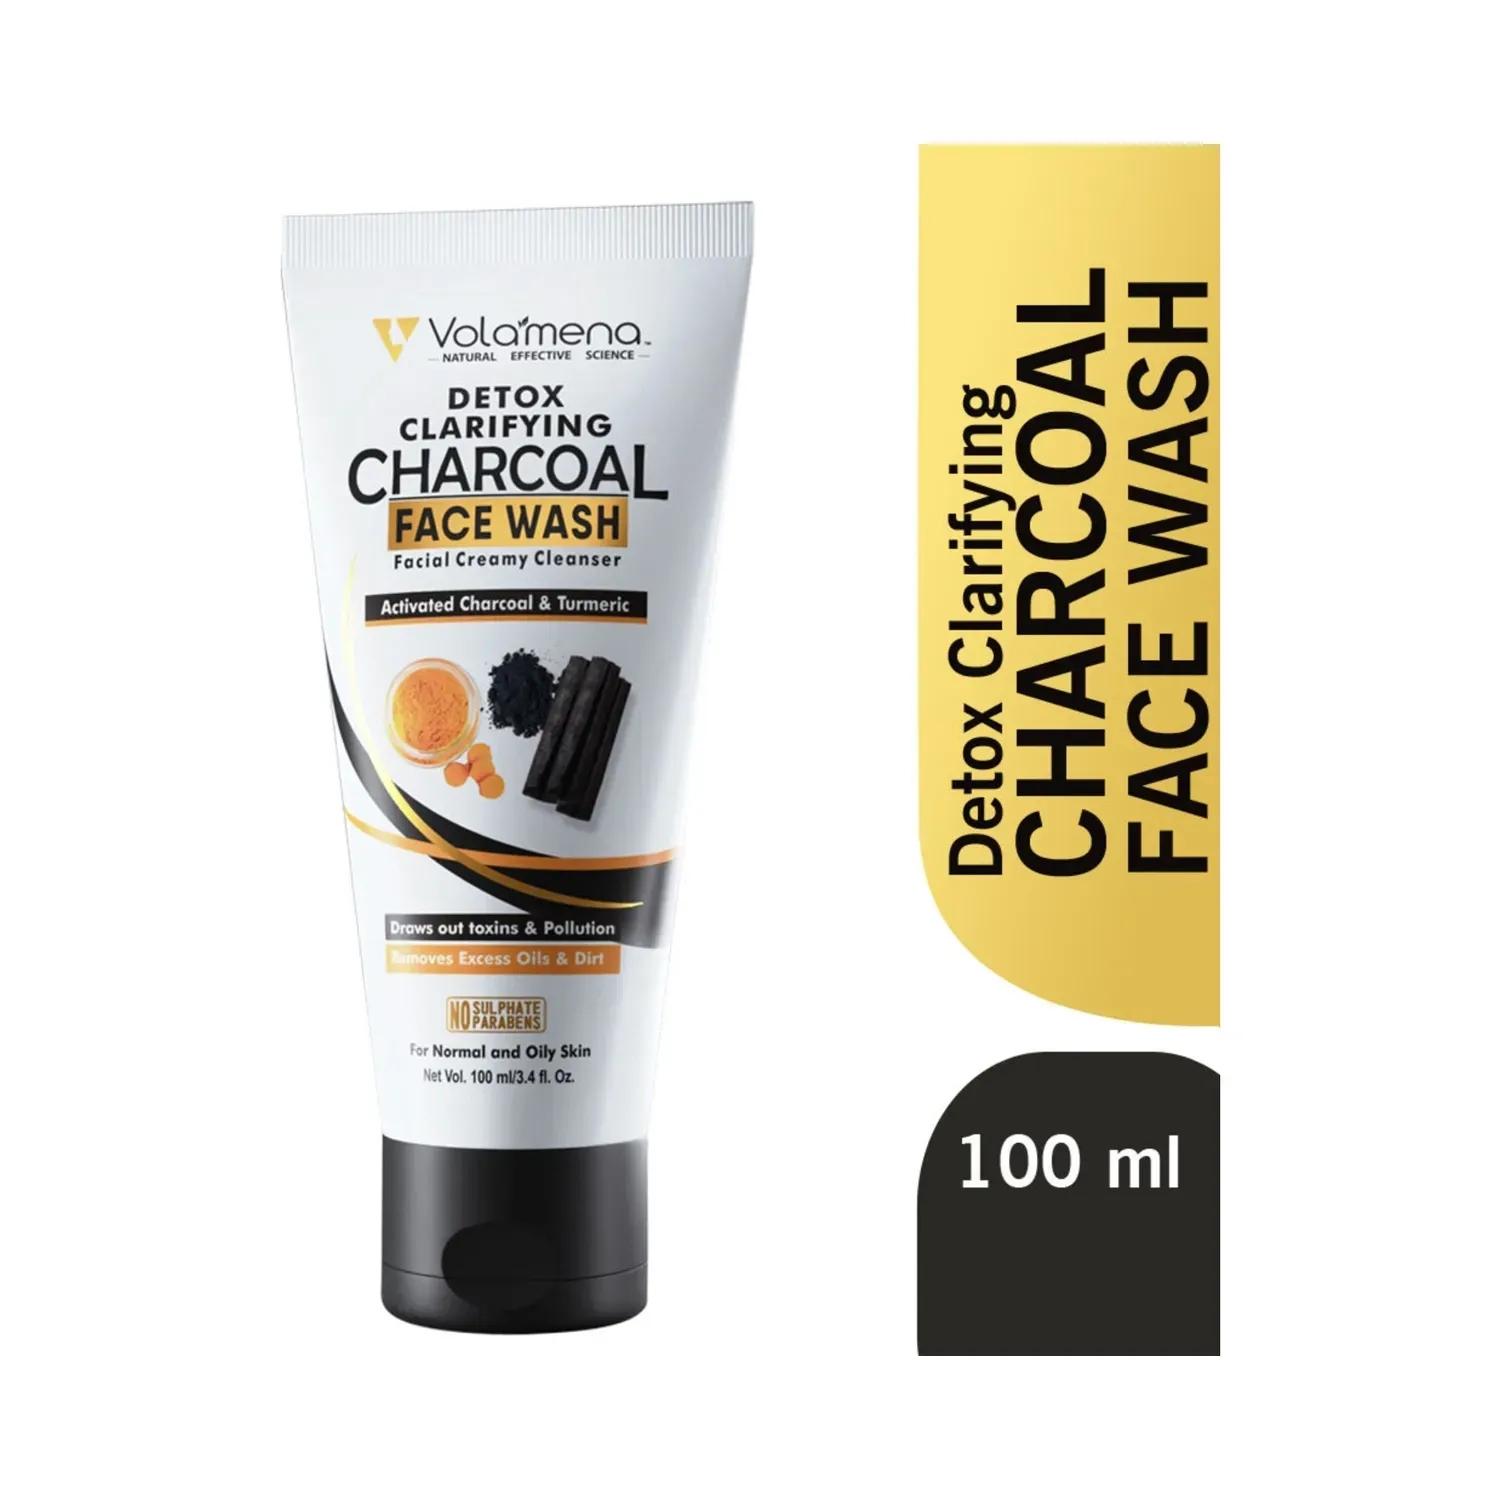 Volamena Detox Clarifying Charcoal Facial Creamy Facewash (100ml)